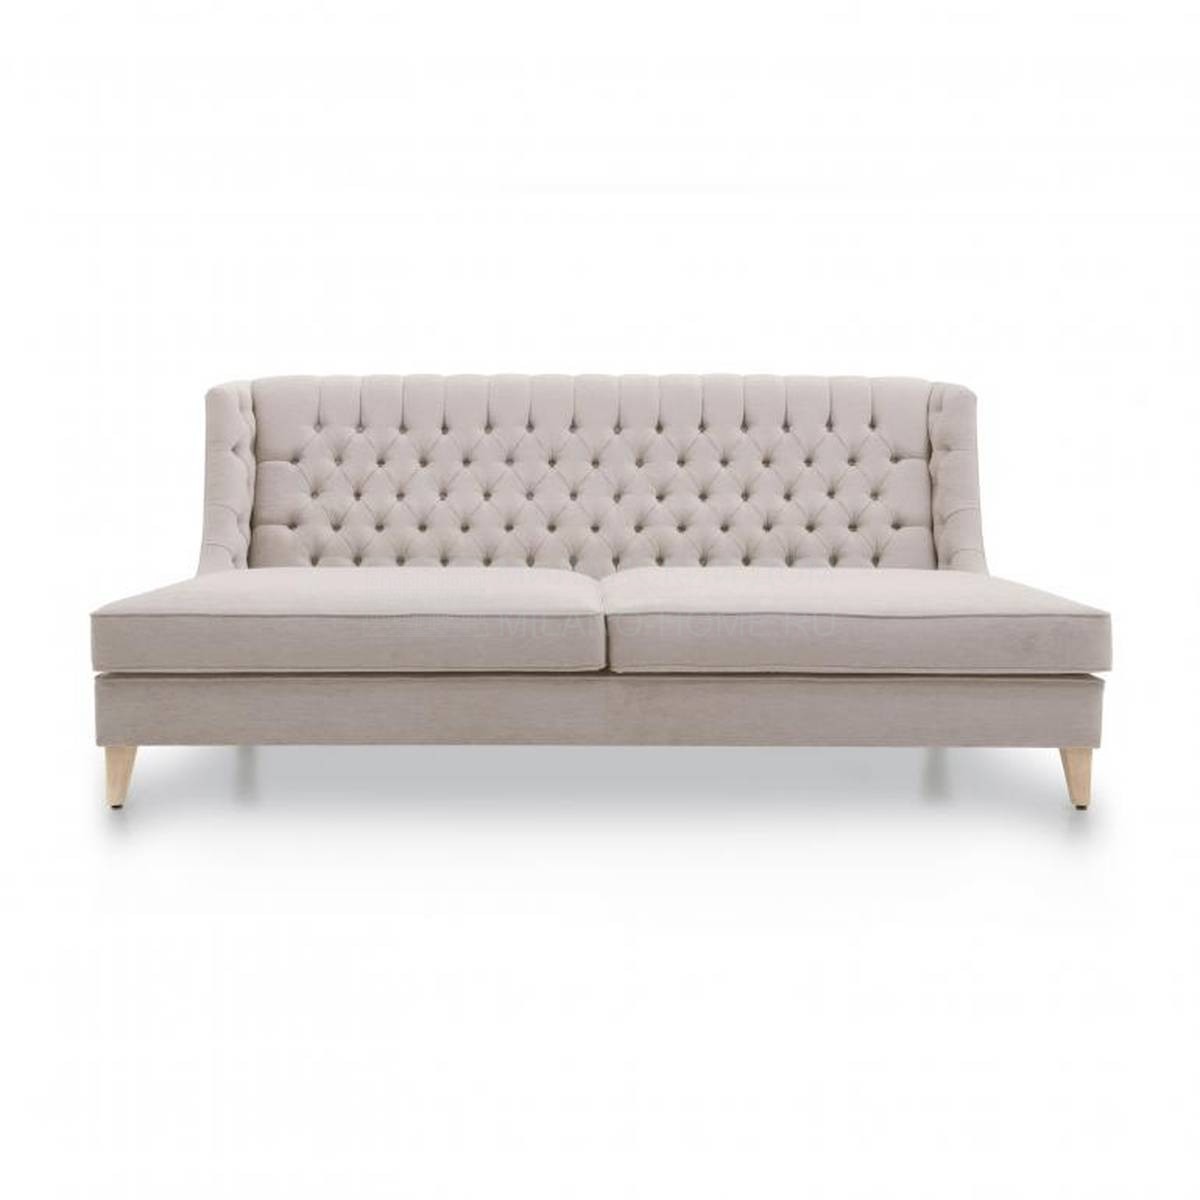 Прямой диван Custom013 из Италии фабрики SEVEN SEDIE